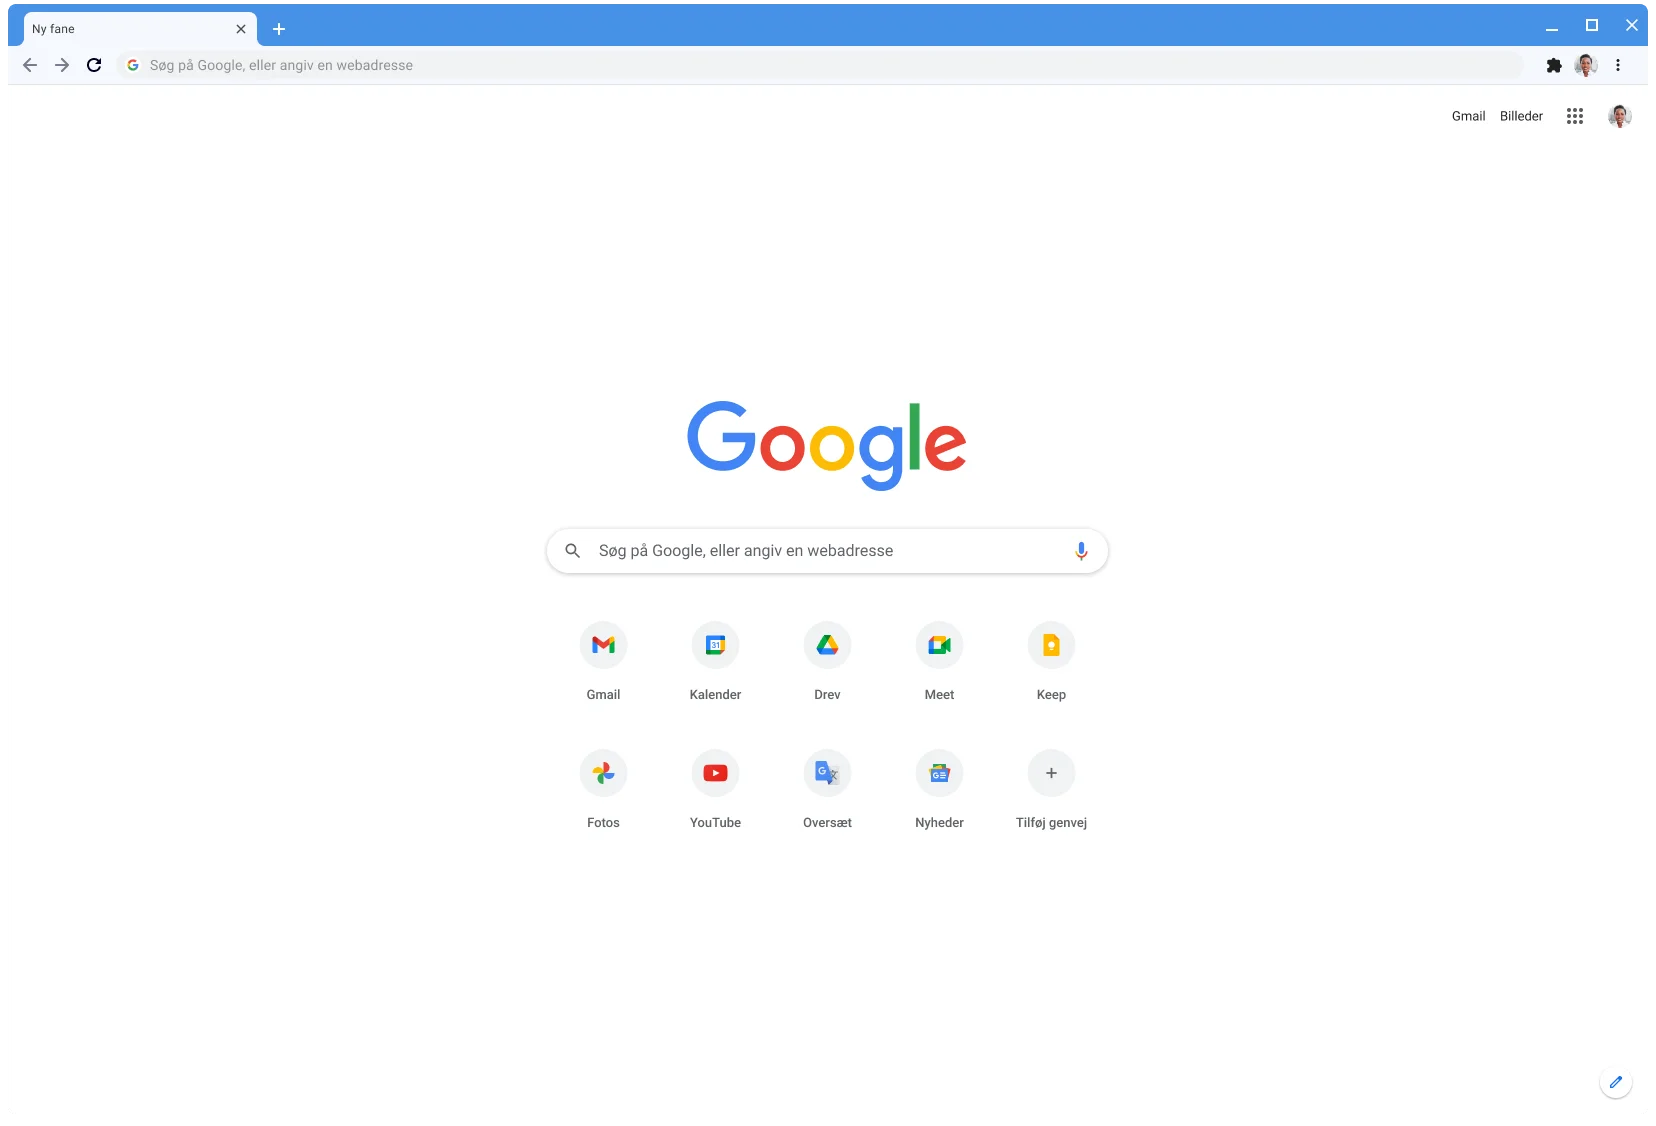 Et Chrome-browservindue, der viser Google.com med det klassiske tema.